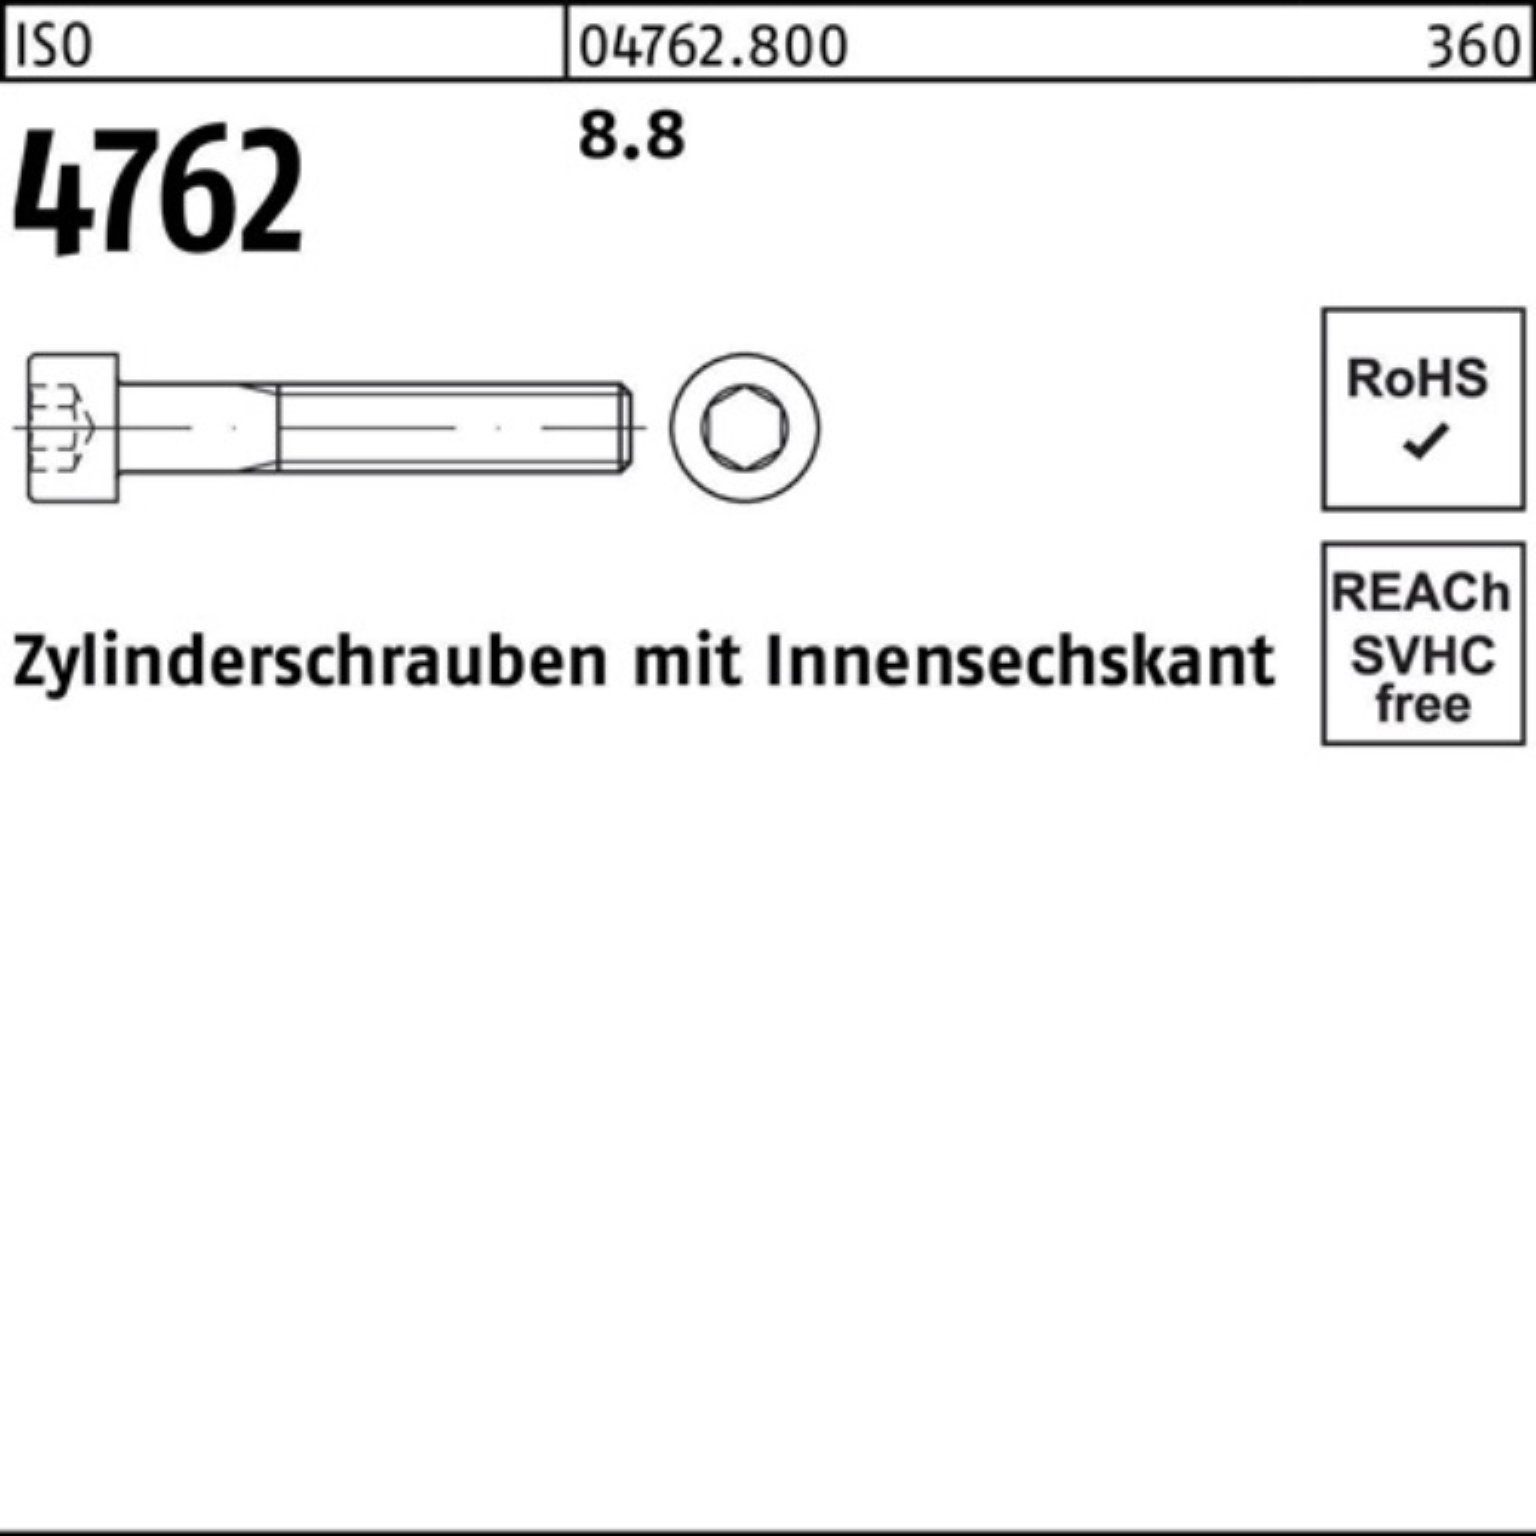 ISO Zylinderschraube Innen-6kt 45 Zylinderschraube Stück 4762 8.8 Reyher 100er Pack 100 M12x